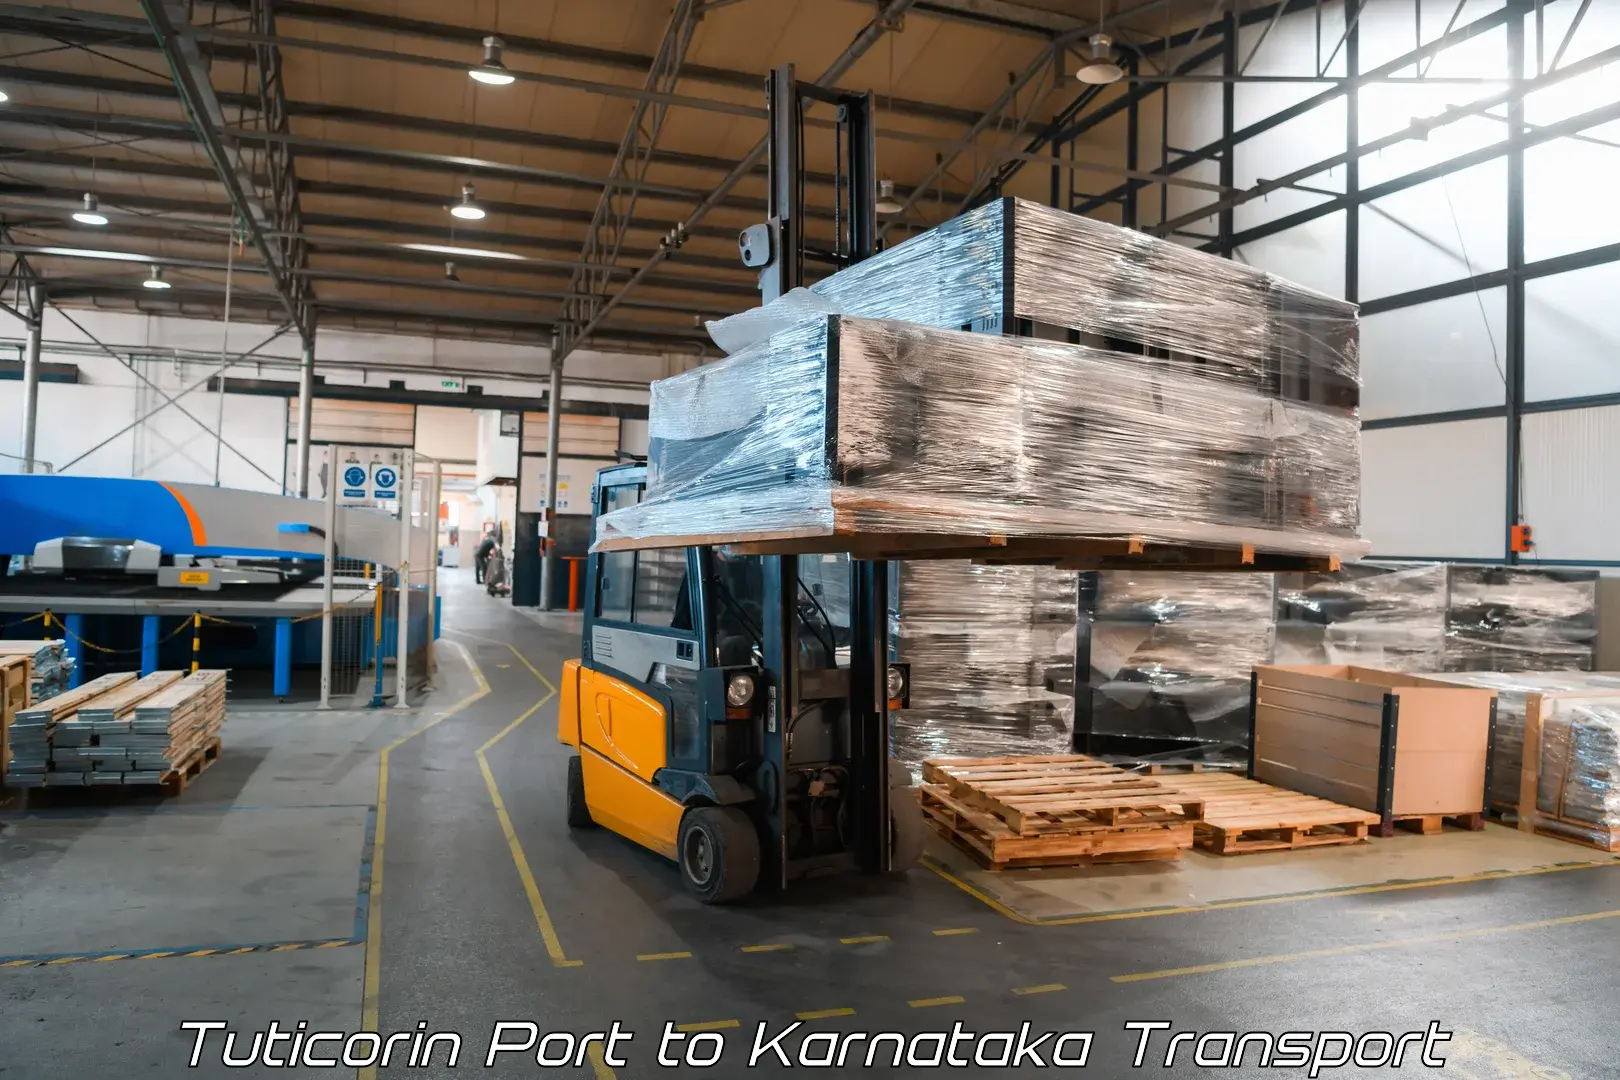 Delivery service Tuticorin Port to Krishnarajpete